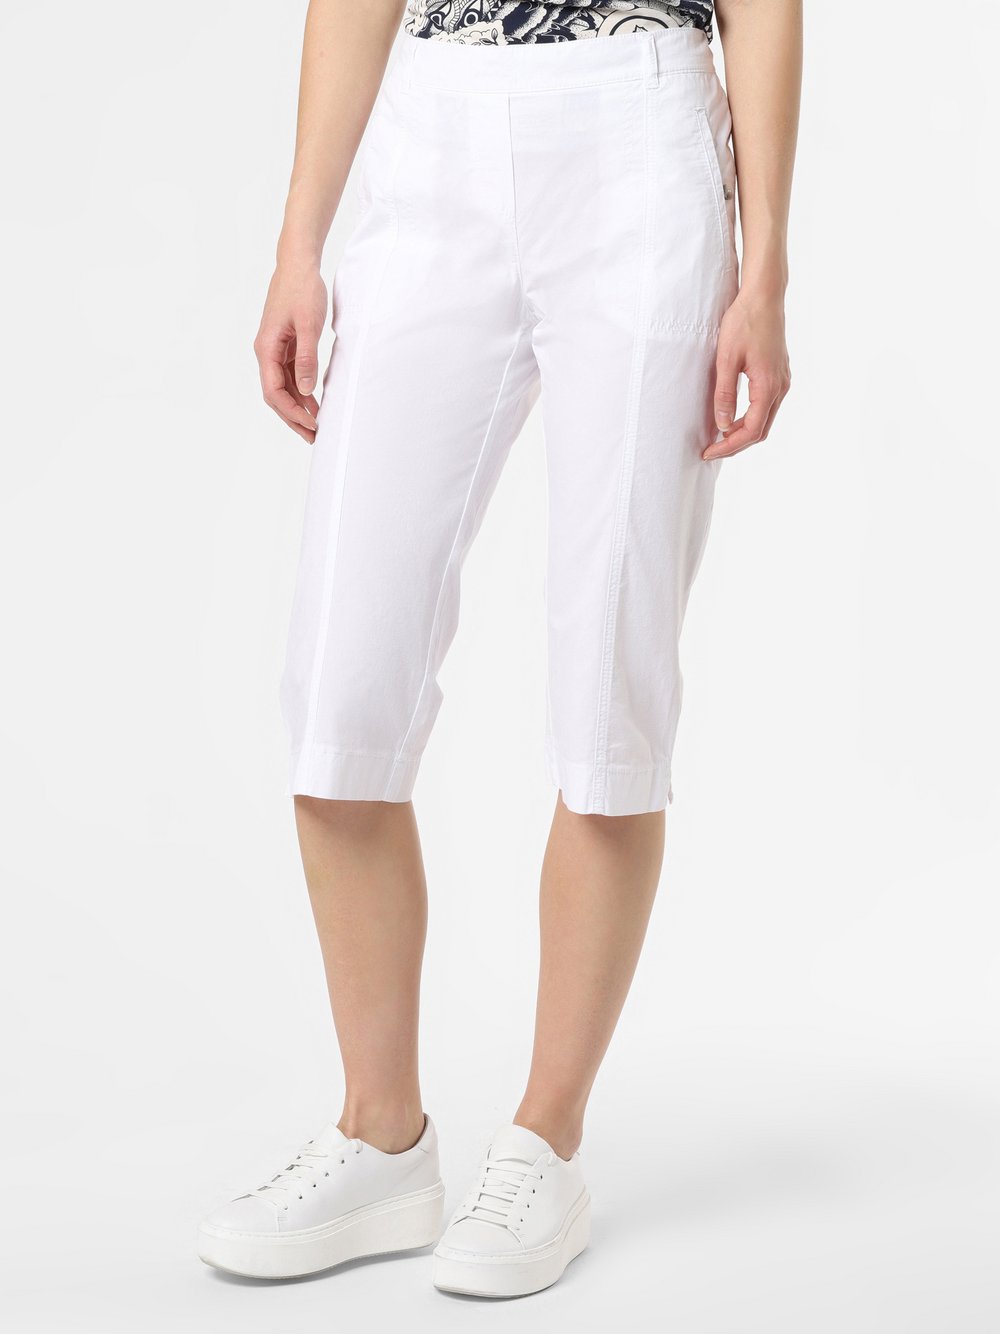 TONI - Spodnie damskie – Mia Capri, biały